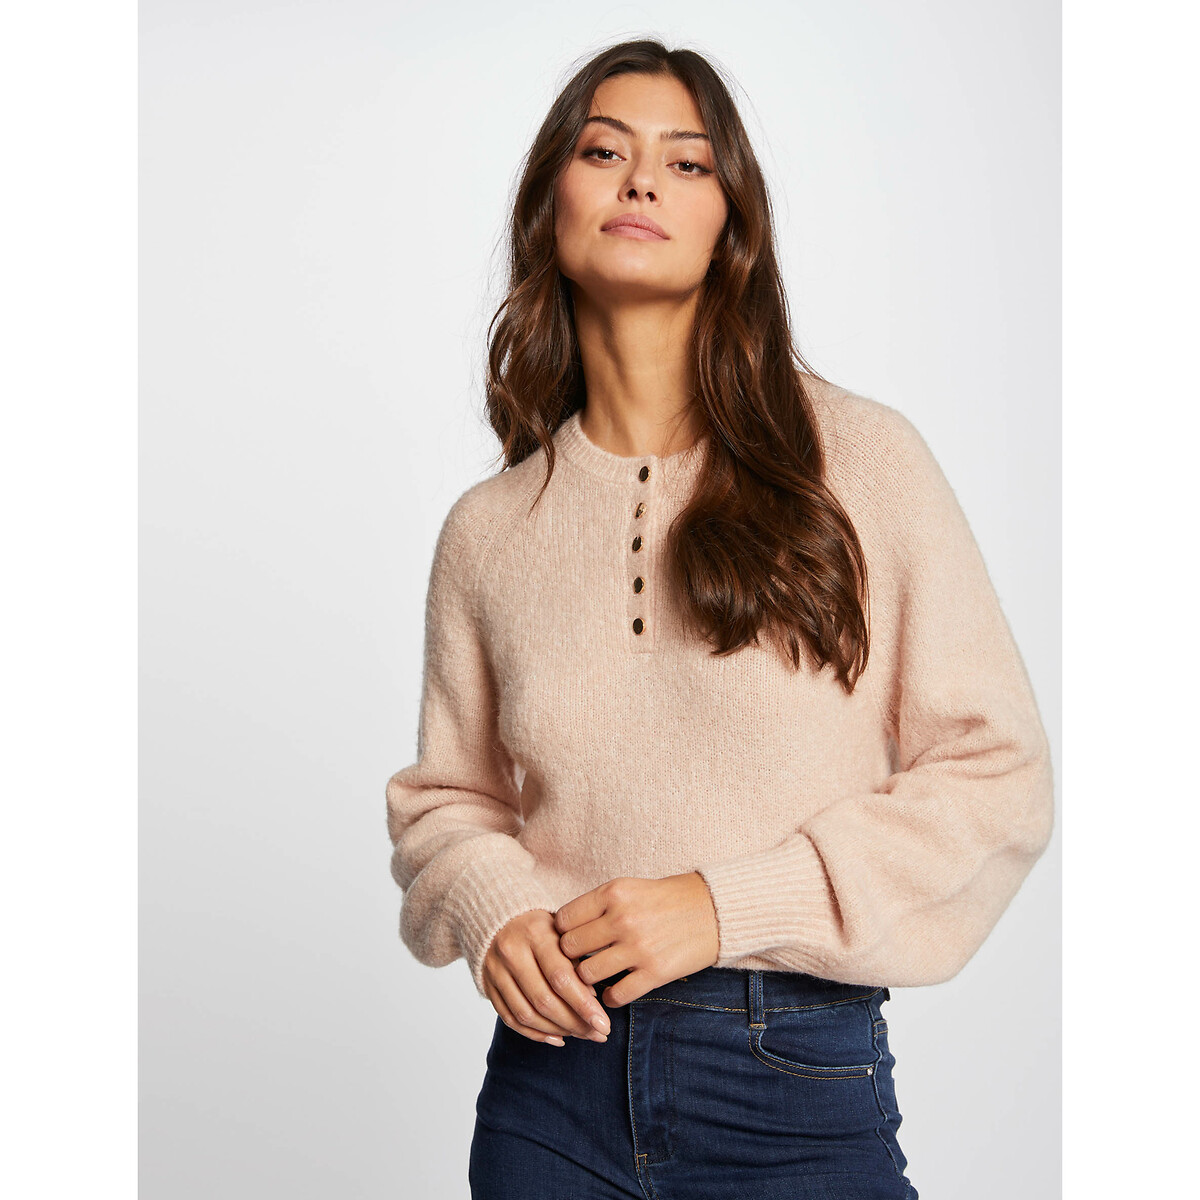 Пуловер MORGAN С длинными рукавами на пуговицах L розовый, размер L